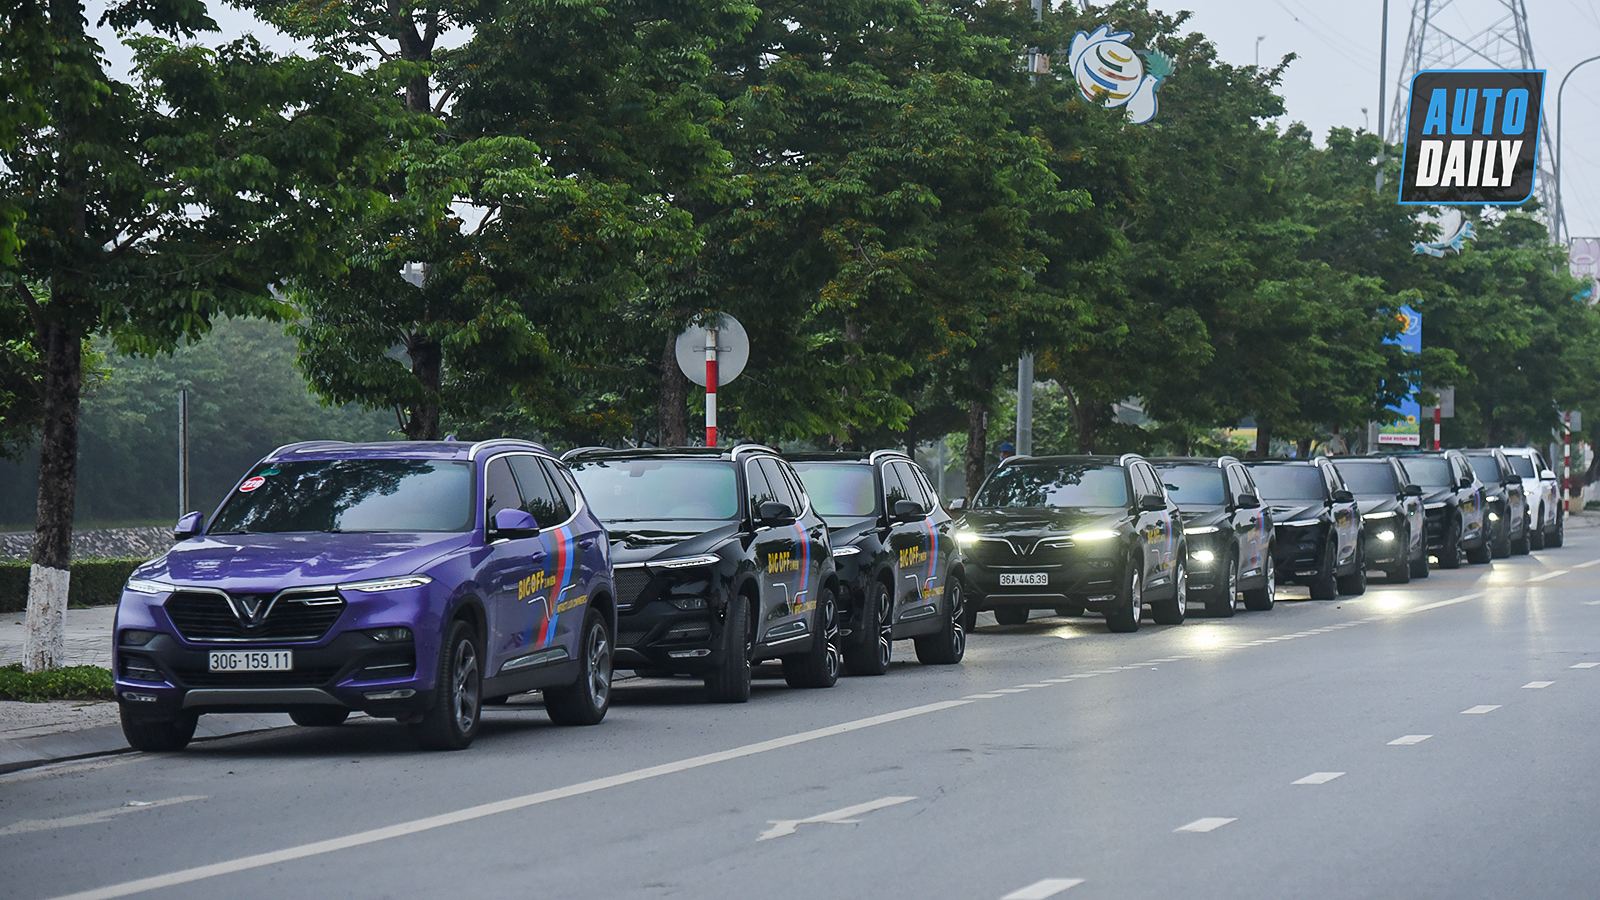 Chùm ảnh gần 60 xe VinFast Lux tại Hà Nội xuất phát Offline 3 miền tại Hội An dsc-5997-copy.jpg